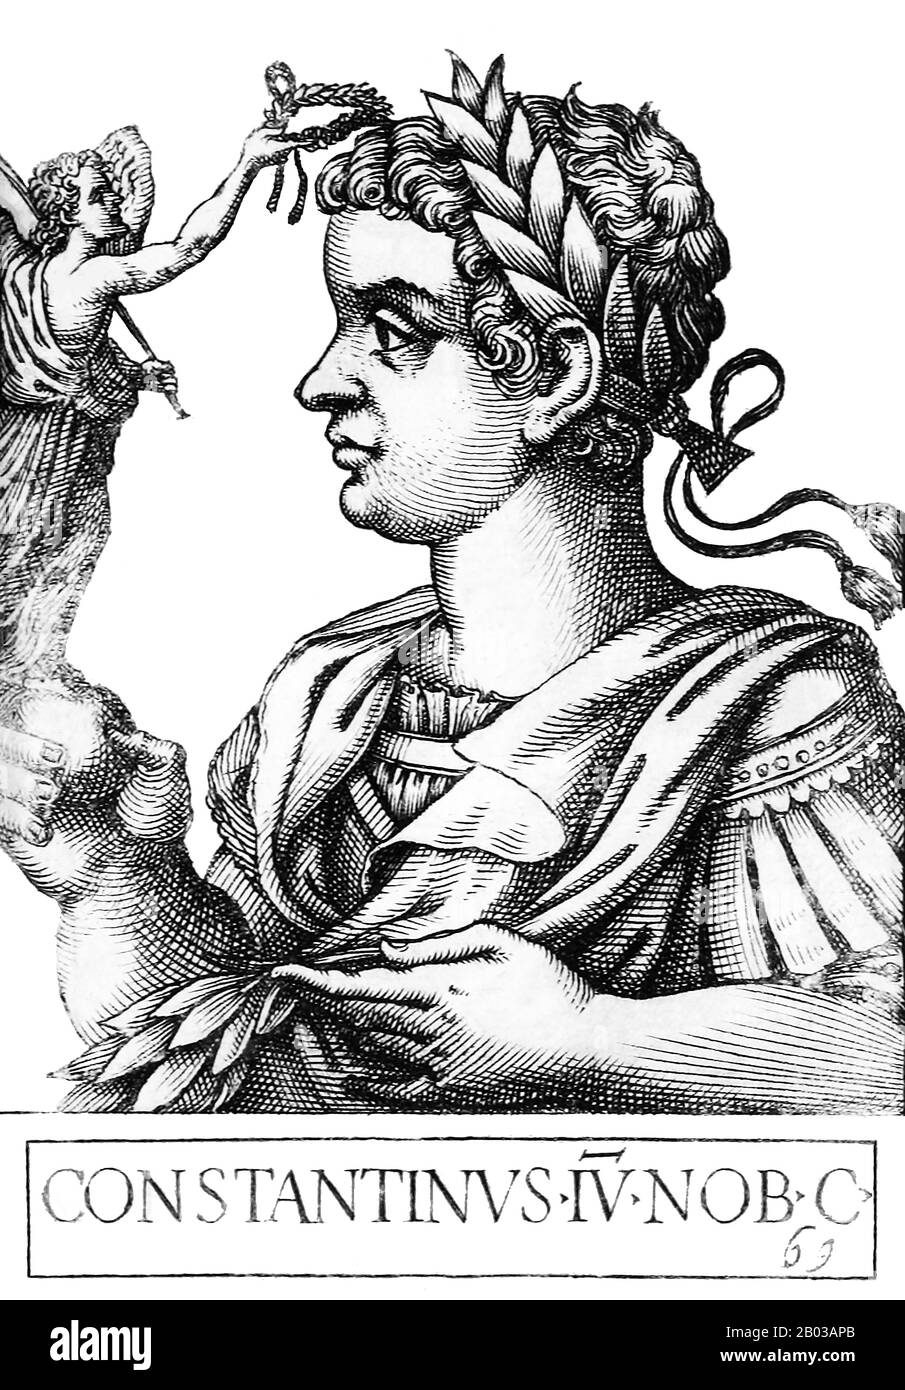 Konstantin II. (316-340) war der zweite Sohn Konstantins des Großen und Faustas und wurde der älteste, nachdem sein Vater seinen Halbbrüder Crispus hingerichtet hatte. Nachdem sein Vater 337 gestorben war, wurde Konstantin II. Zunächst neben seinen Brüdern Constantius II. Und Constans sowie seinen Cousins Dalmatius und Hannibalianus Mitkaiser, Obwohl seine Cousins bald nicht mehr auf dem Bild waren, als er und seine Brüder die Tötung der meisten der restlichen kaiserlichen Familie anordneten. Konstantin II. Wurde Kaiser von Gallien, Britannia, Hispanien und Mauretania, als er das Reich formell mit seinem partitionierte Stockfoto